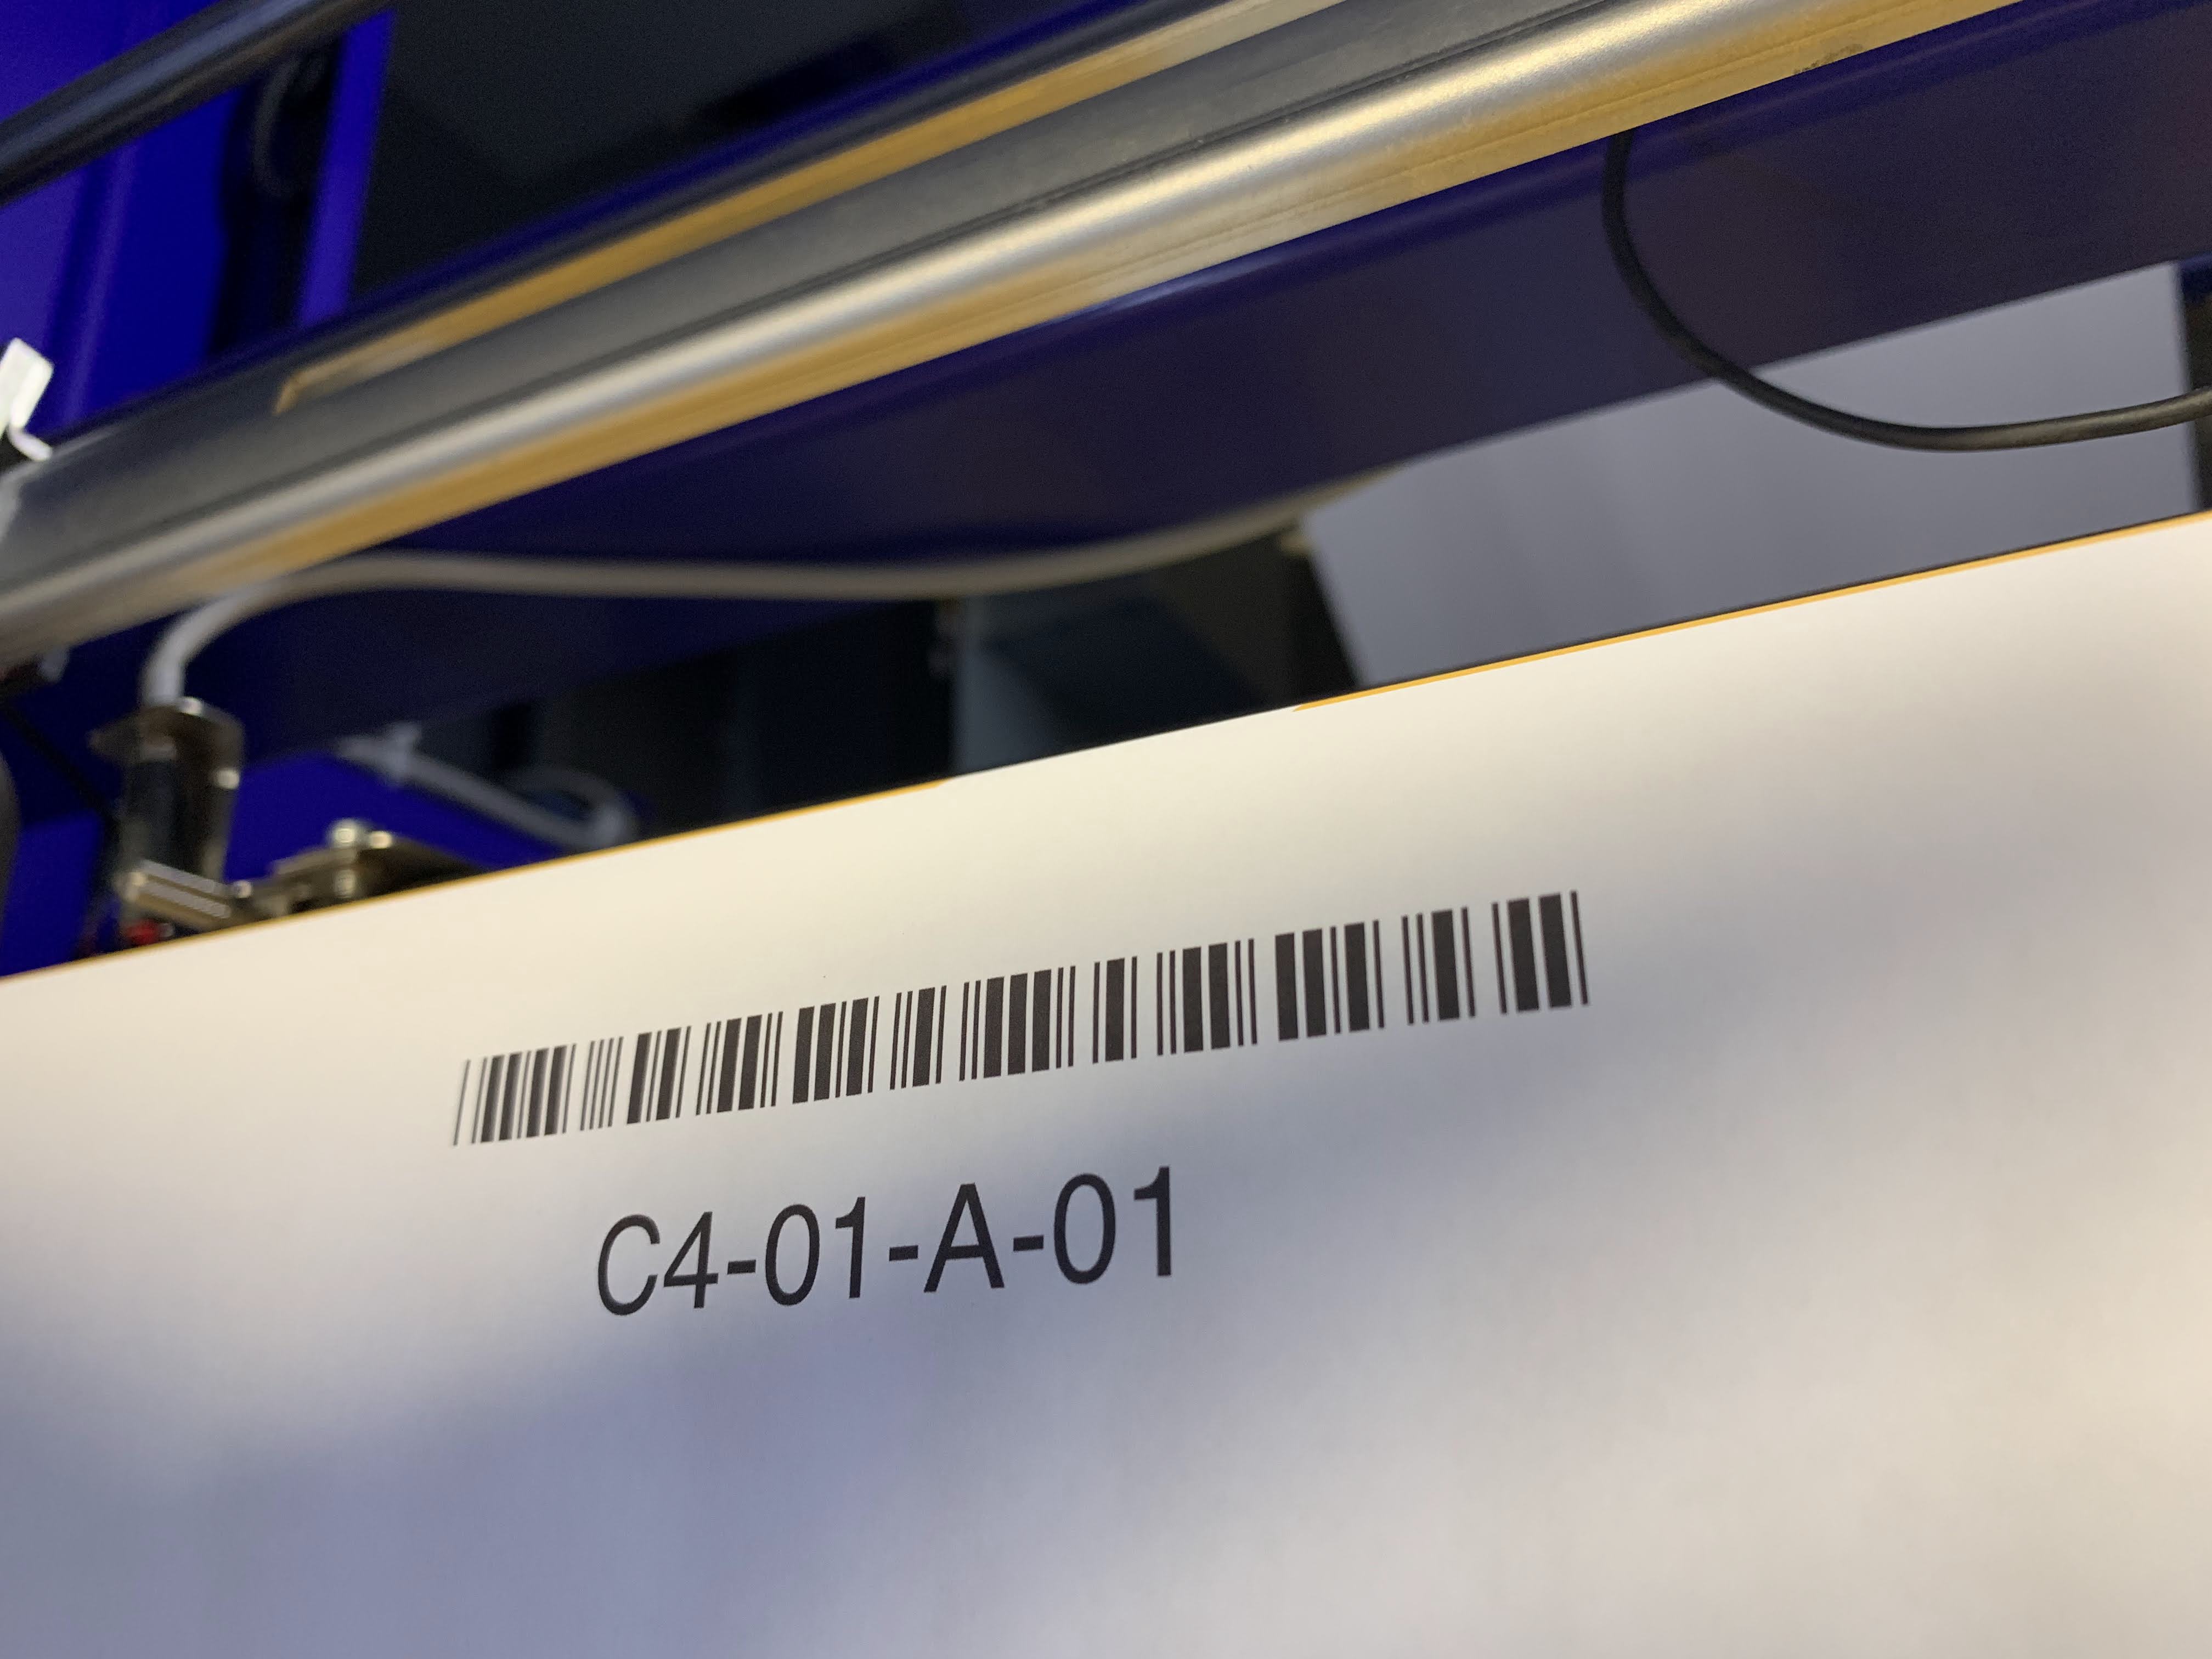 Sample Custom Bar Code Label Image